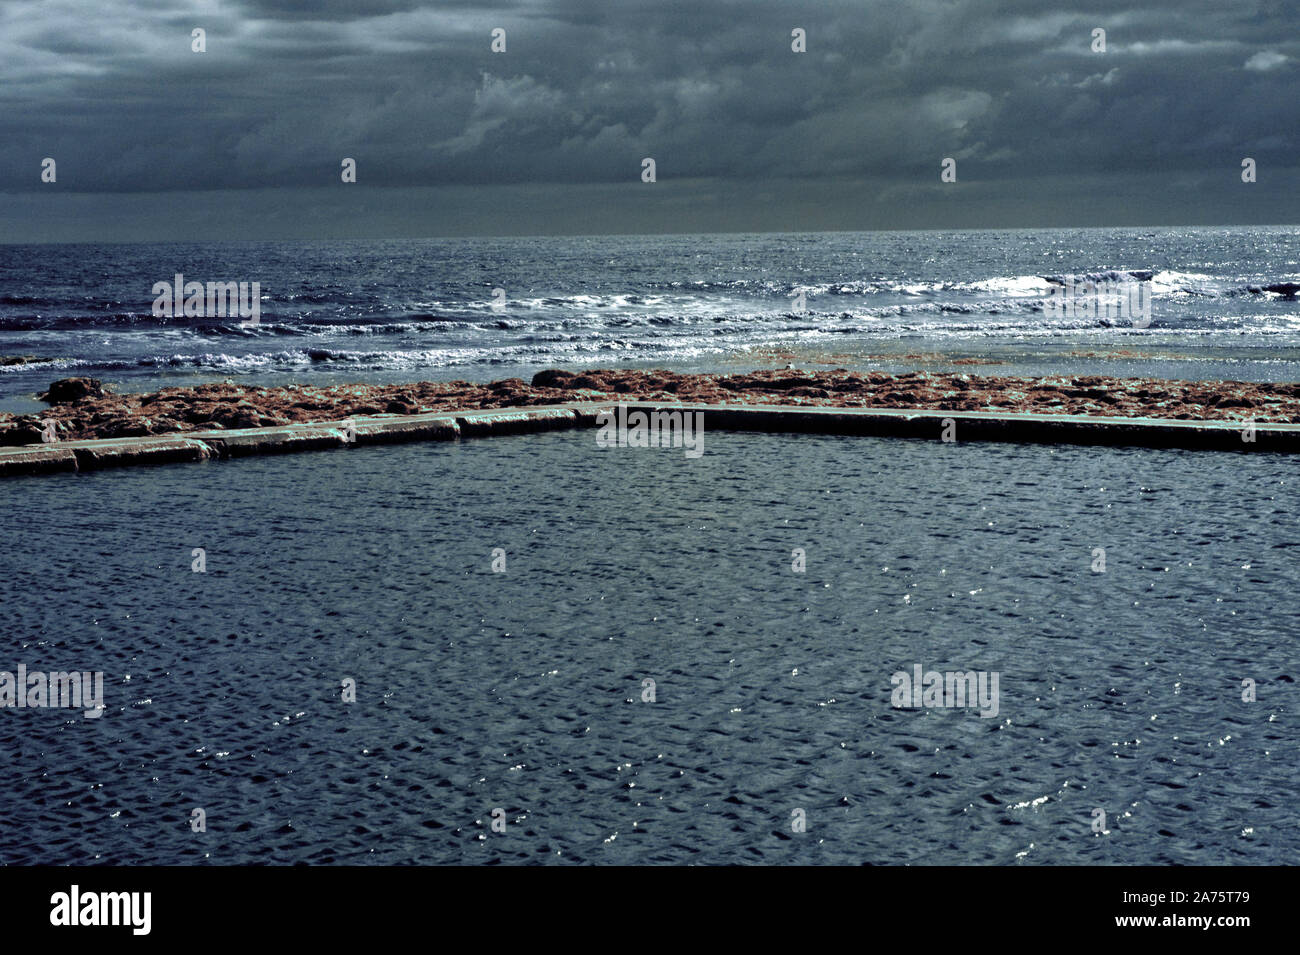 Image infrarouge - bassin de marée à marée basse - viking bay - resort de broadstairs - Île de Thanet - Kent - Angleterre - Royaume-Uni Banque D'Images